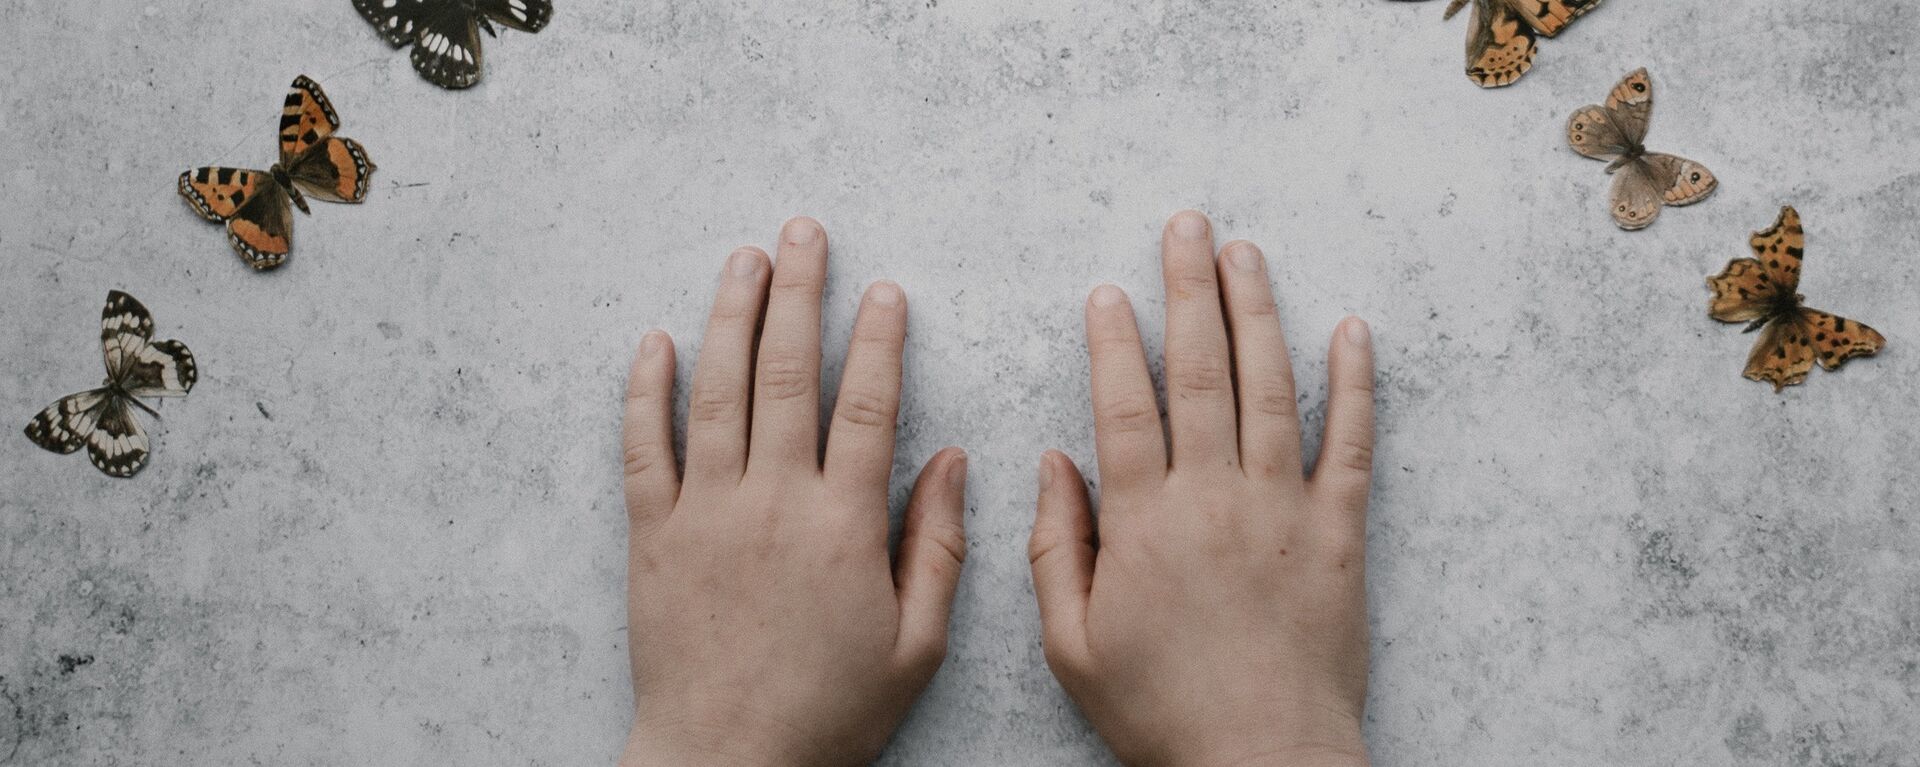 Las manos de un niño (imagen referencial) - Sputnik Mundo, 1920, 21.06.2021